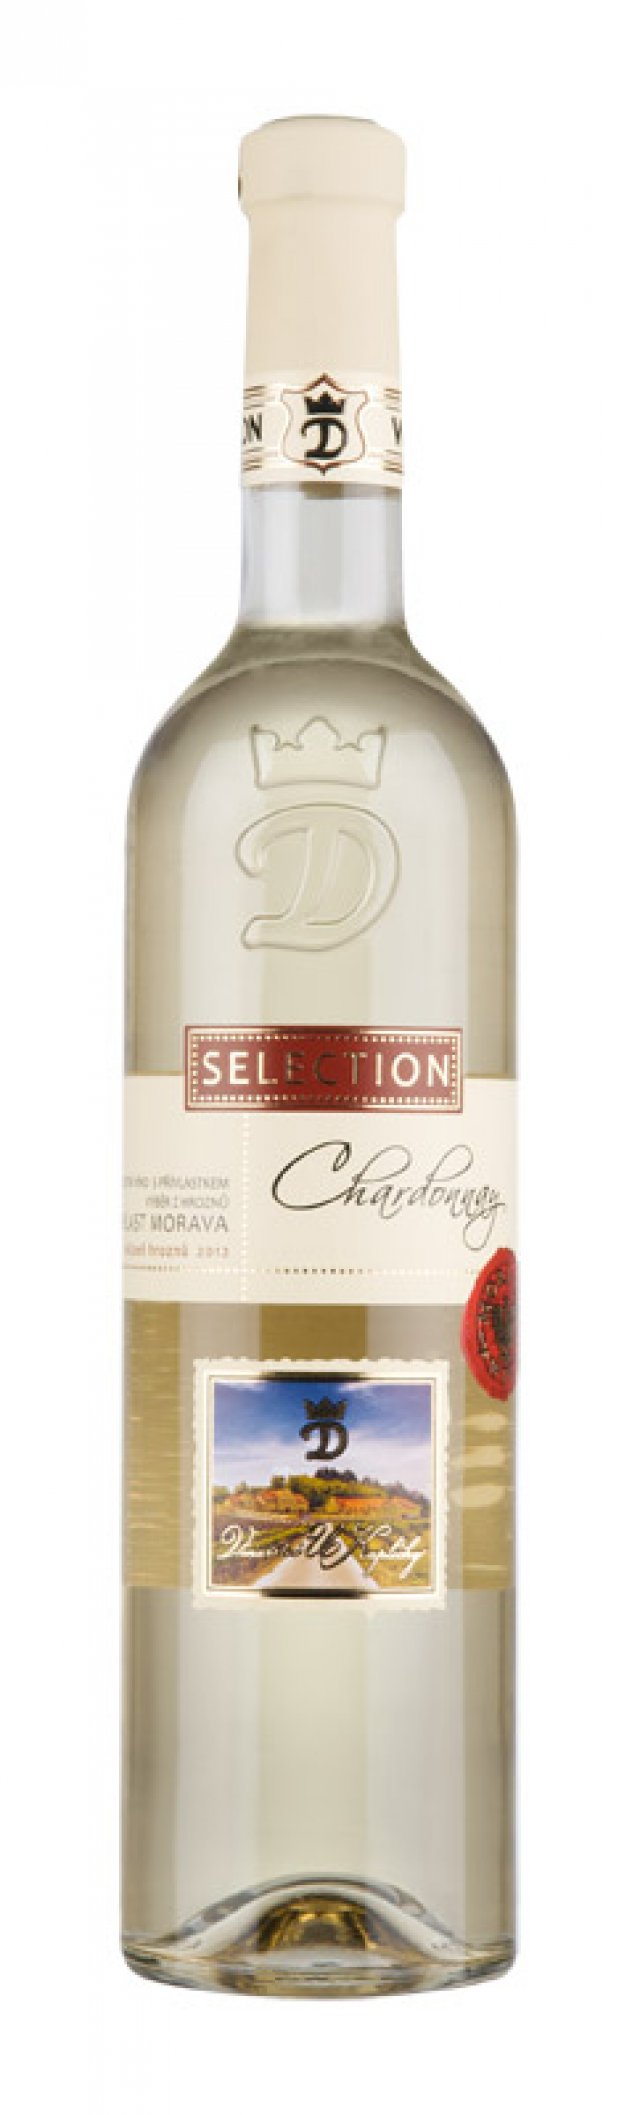 Chardonnay 2012 Výběr z hroznů, U Kapličky